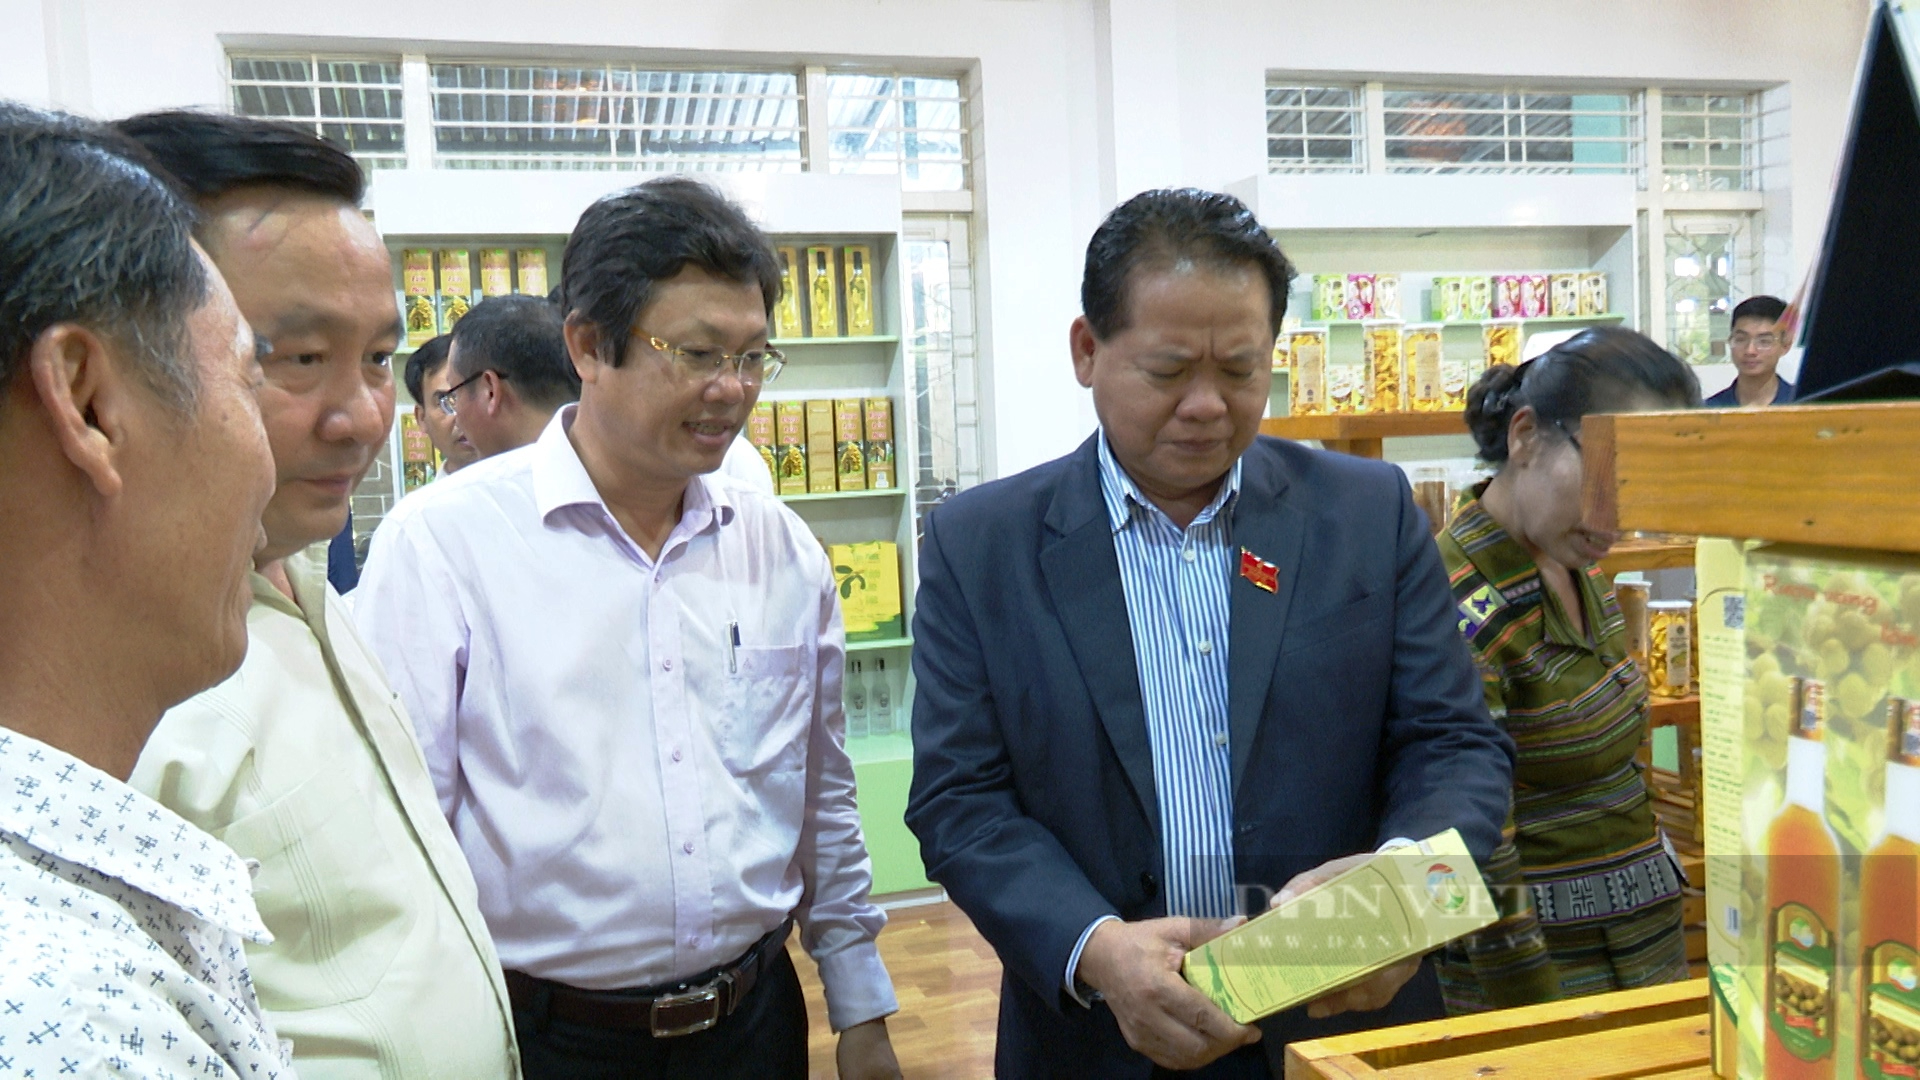 Quảng Nam: Đoàn công tác tỉnh Sê Kông thăm mô hình triệu phú của nông dân xứ Tiên - Ảnh 3.